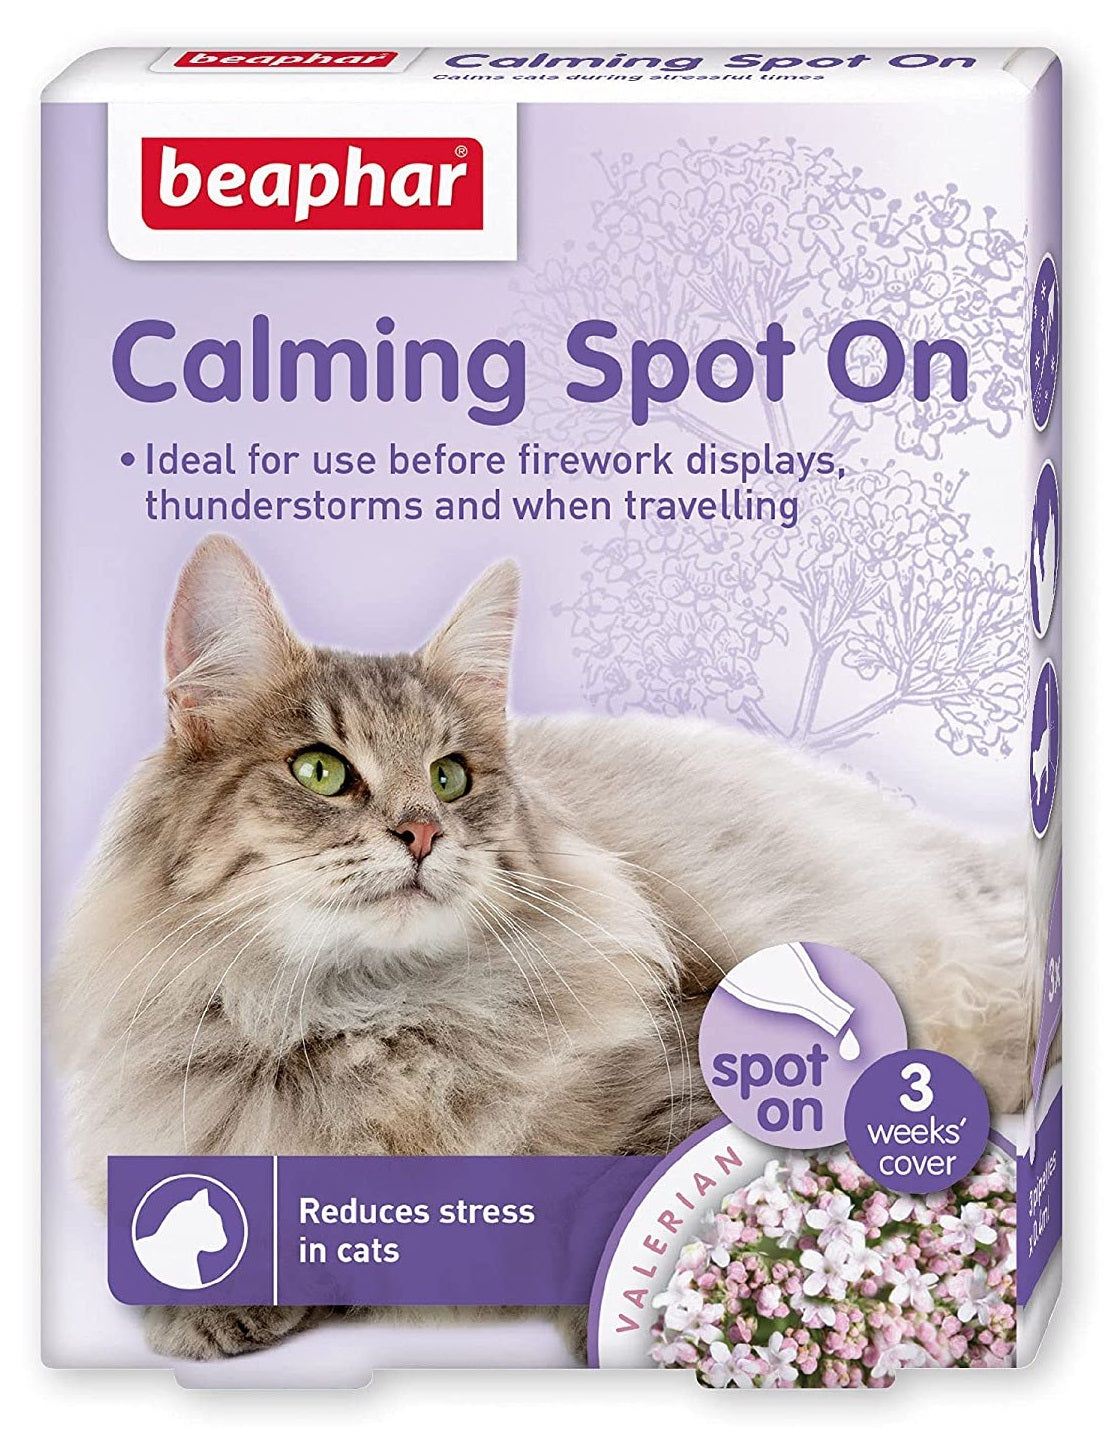 Beaphar Calming Spot On For Cat